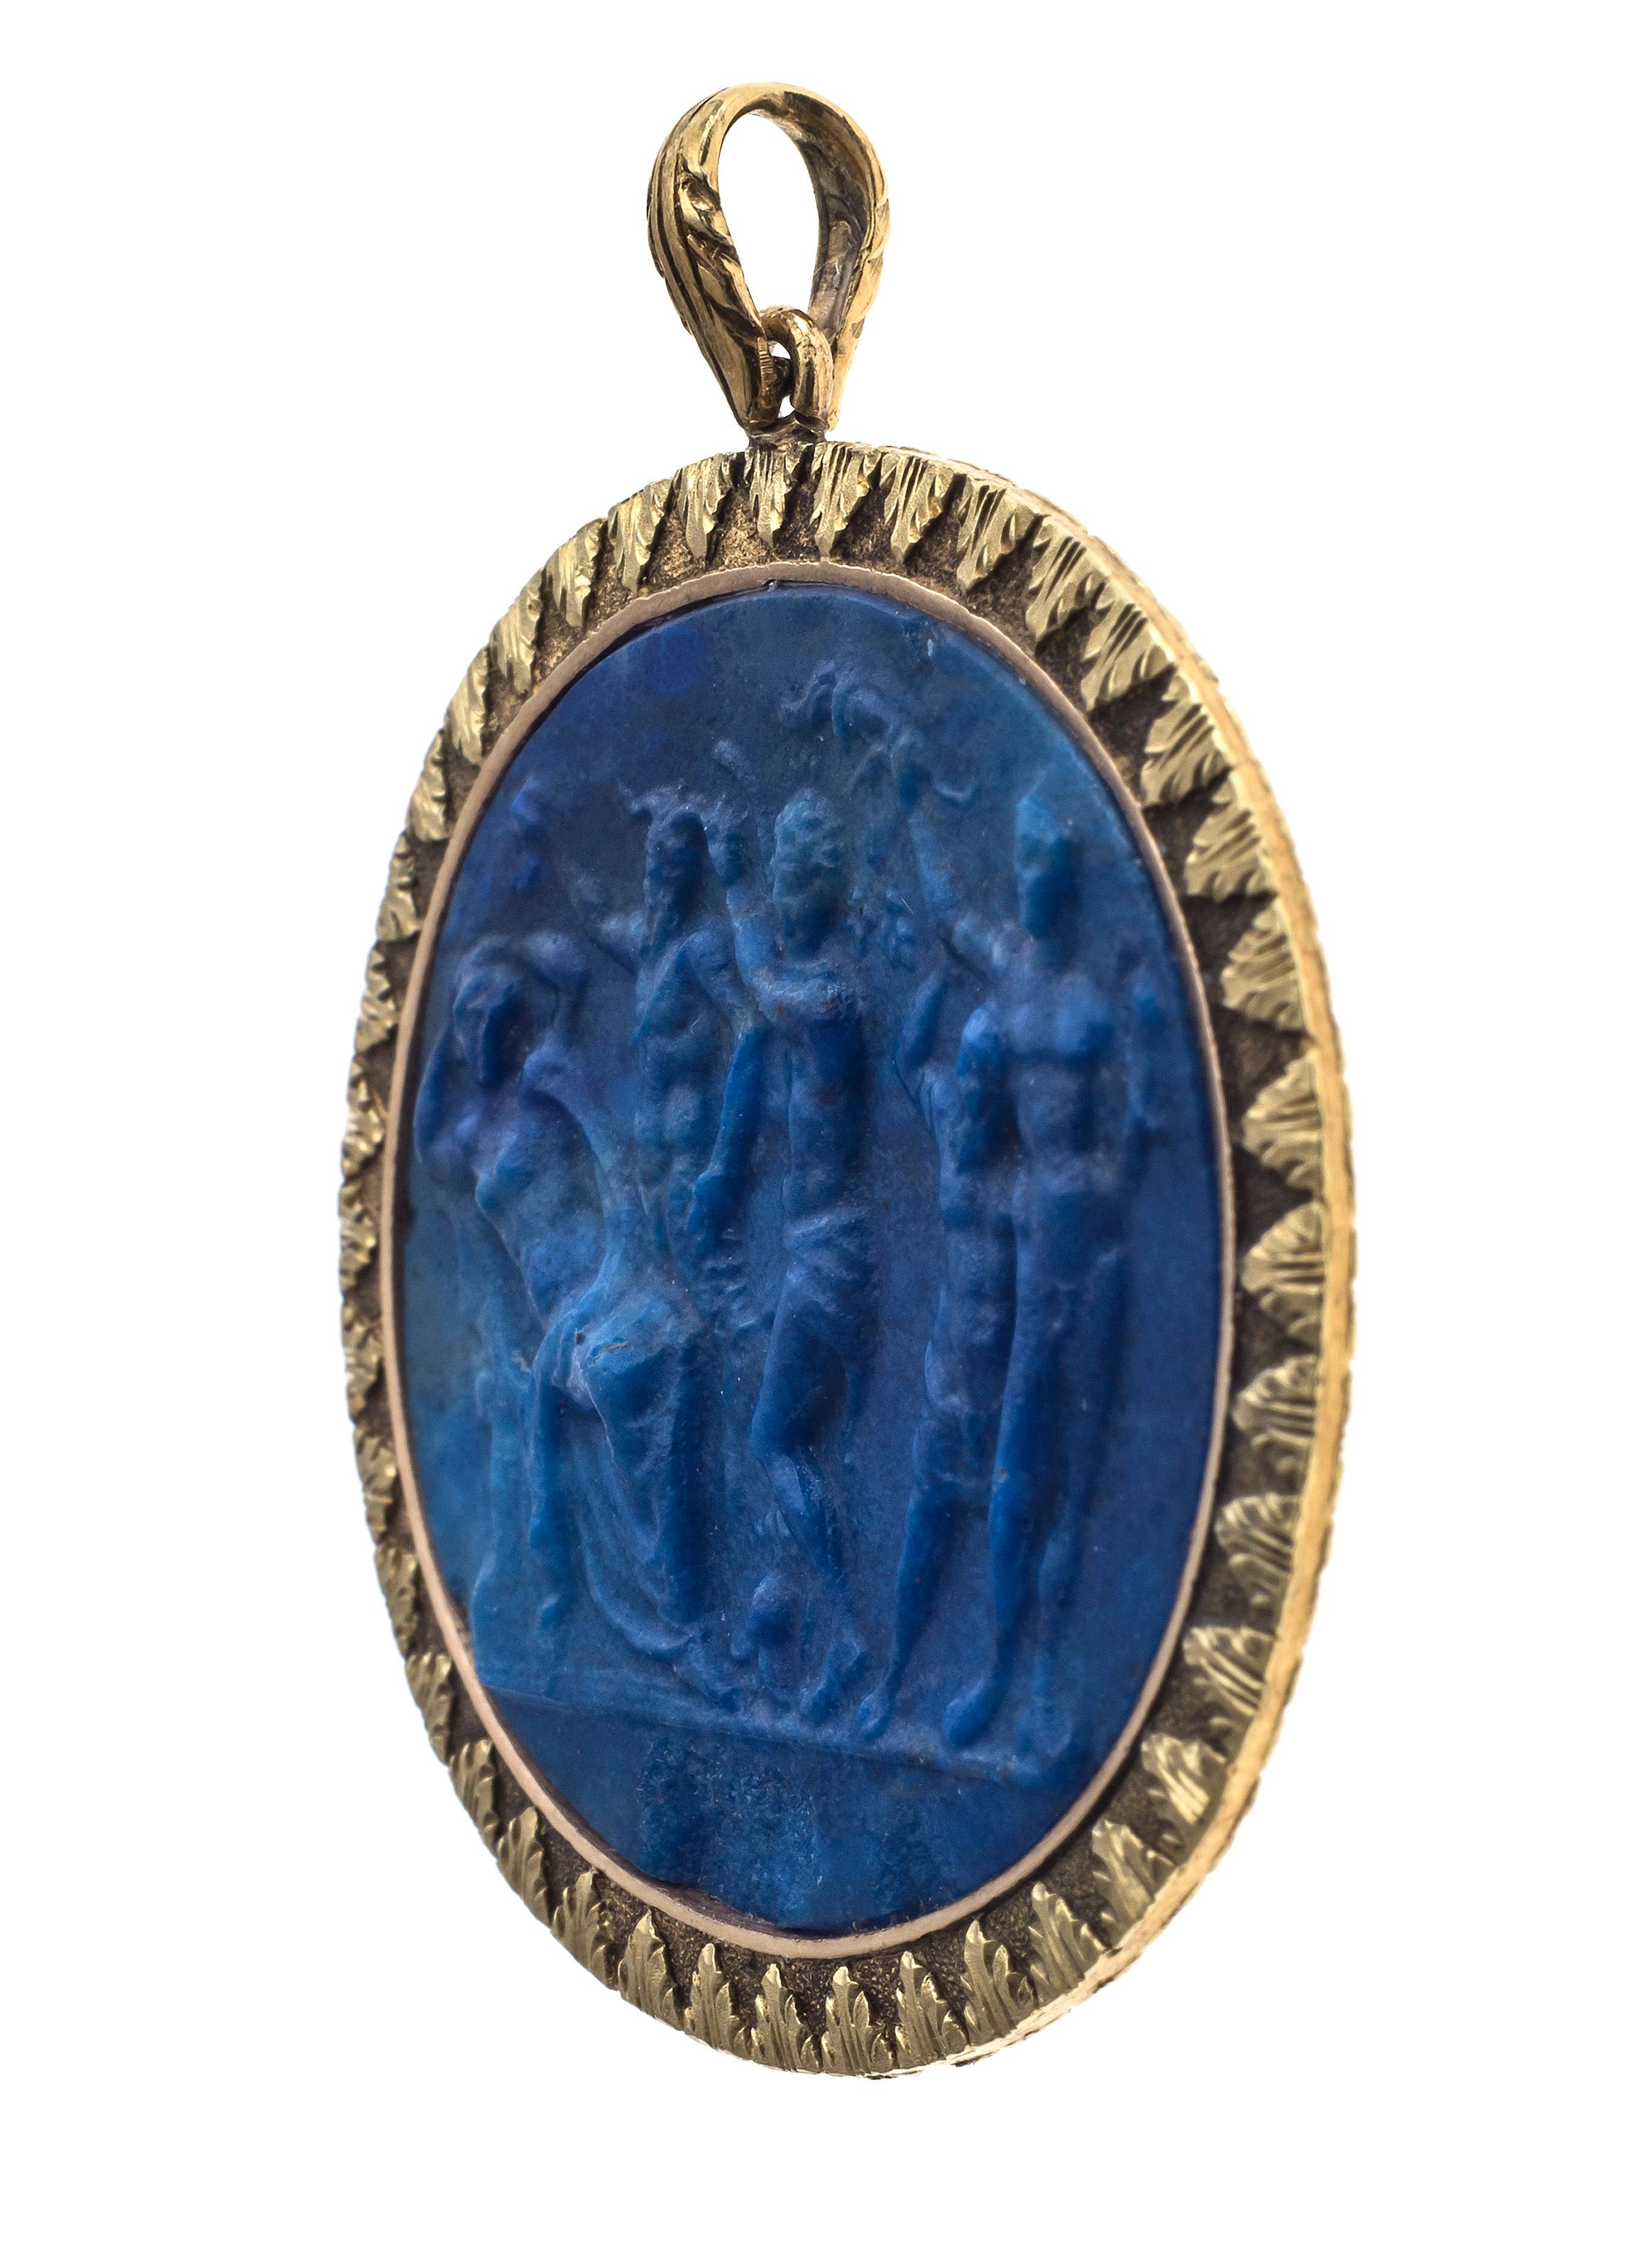 Magnifique et extrêmement rare pendentif camée en lapis-lazuli sculpté des deux côtés. La sculpture exquise est montée dans un cadre en or fin 18 carats décoré de feuilles d'acanthe ciselées. Le recto et le verso présentent deux thèmes mythologiques